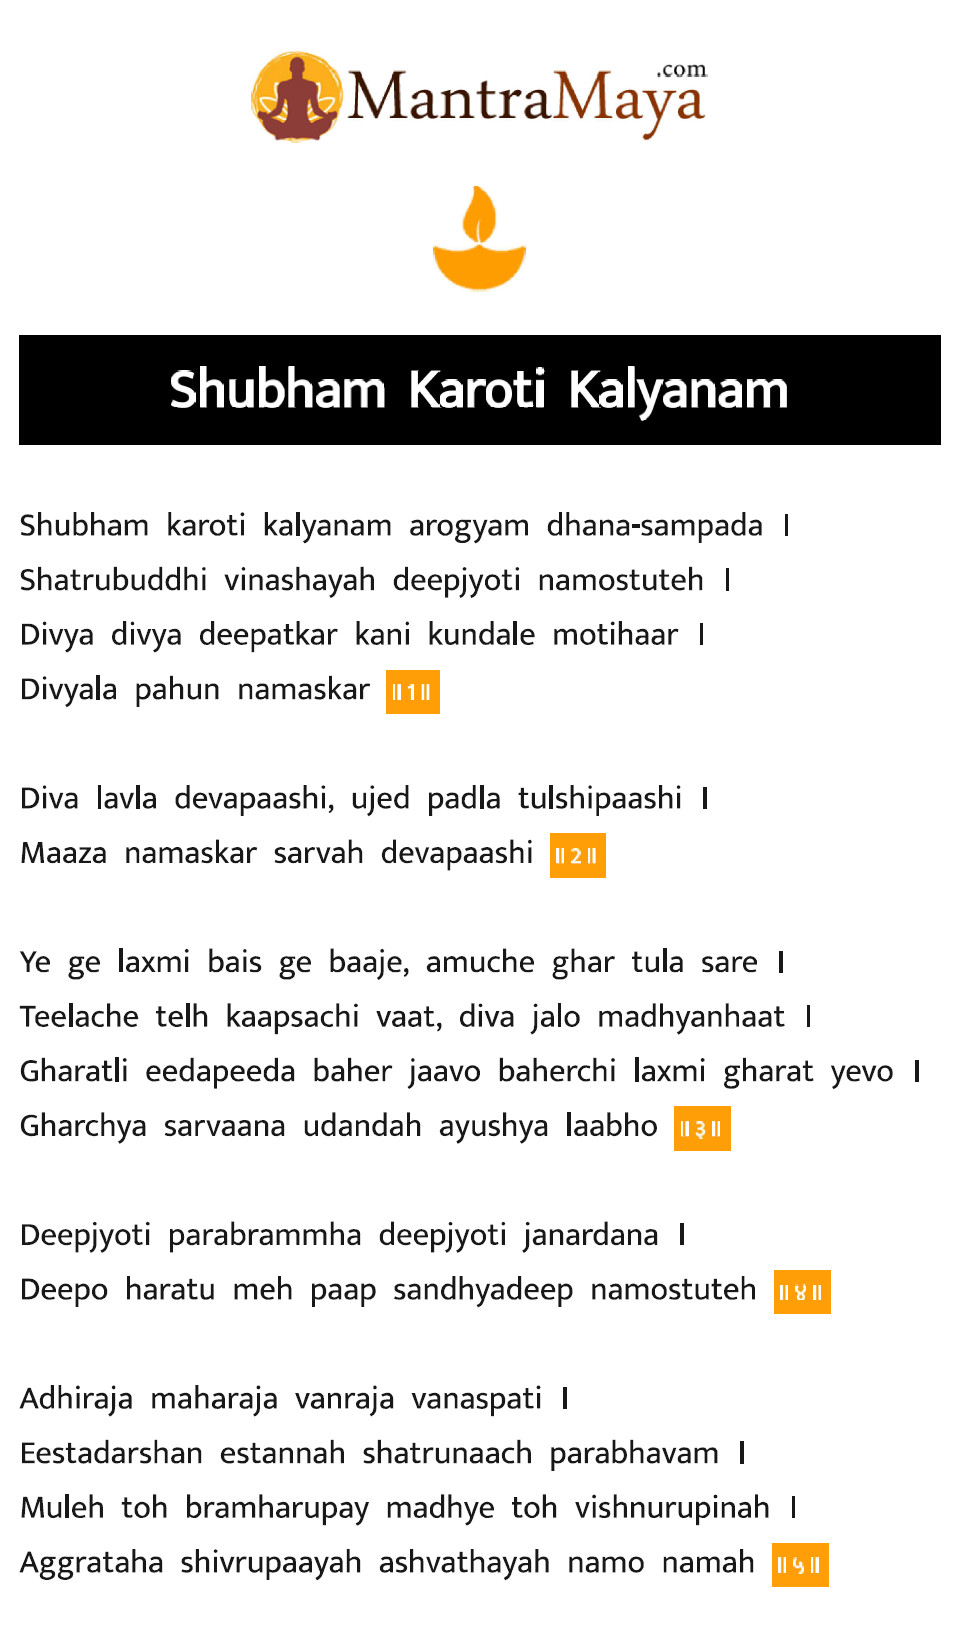 Lata mangeshkar shubham karoti kalyanam lyrics